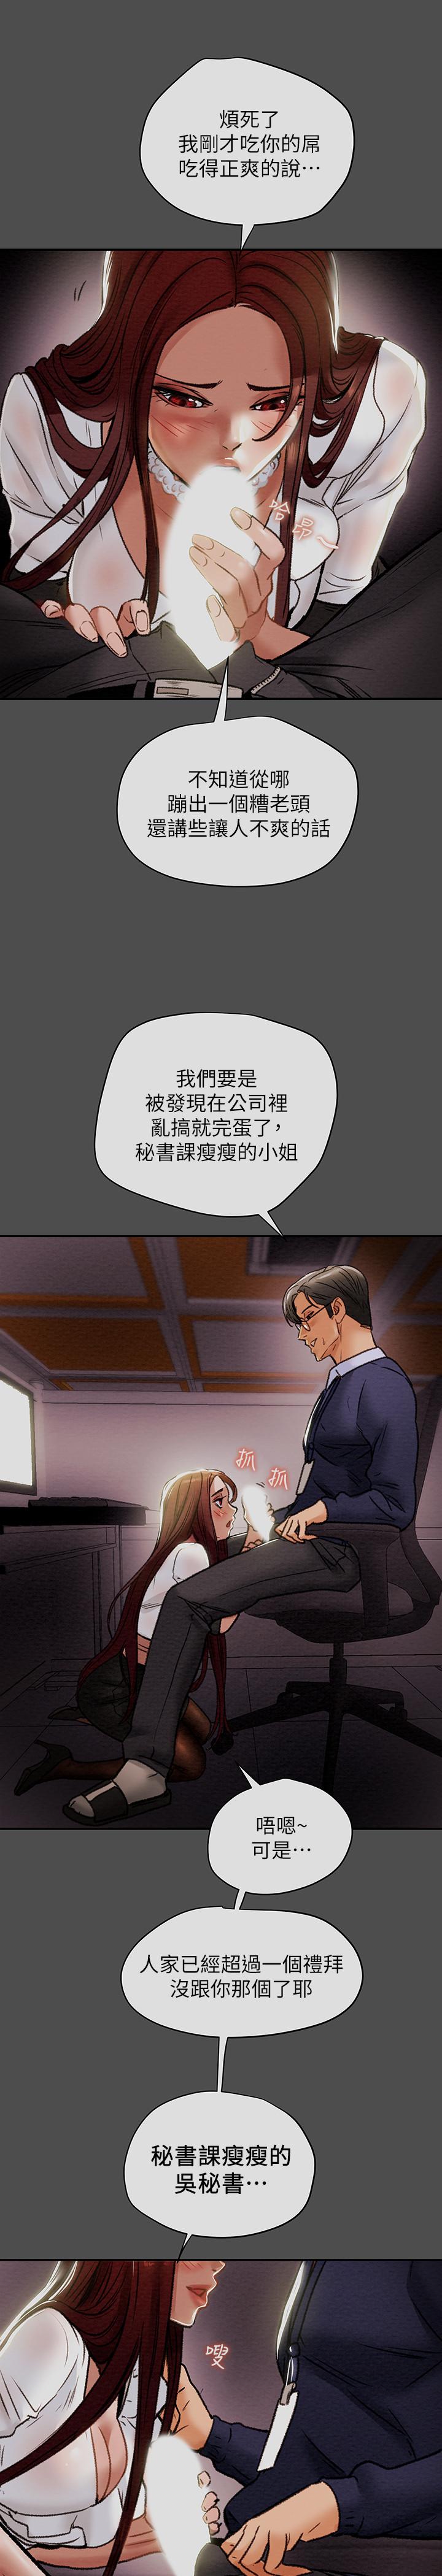 韩国污漫画 純情女攻略計劃 第17话-在老板办公室和秘书做爱 1